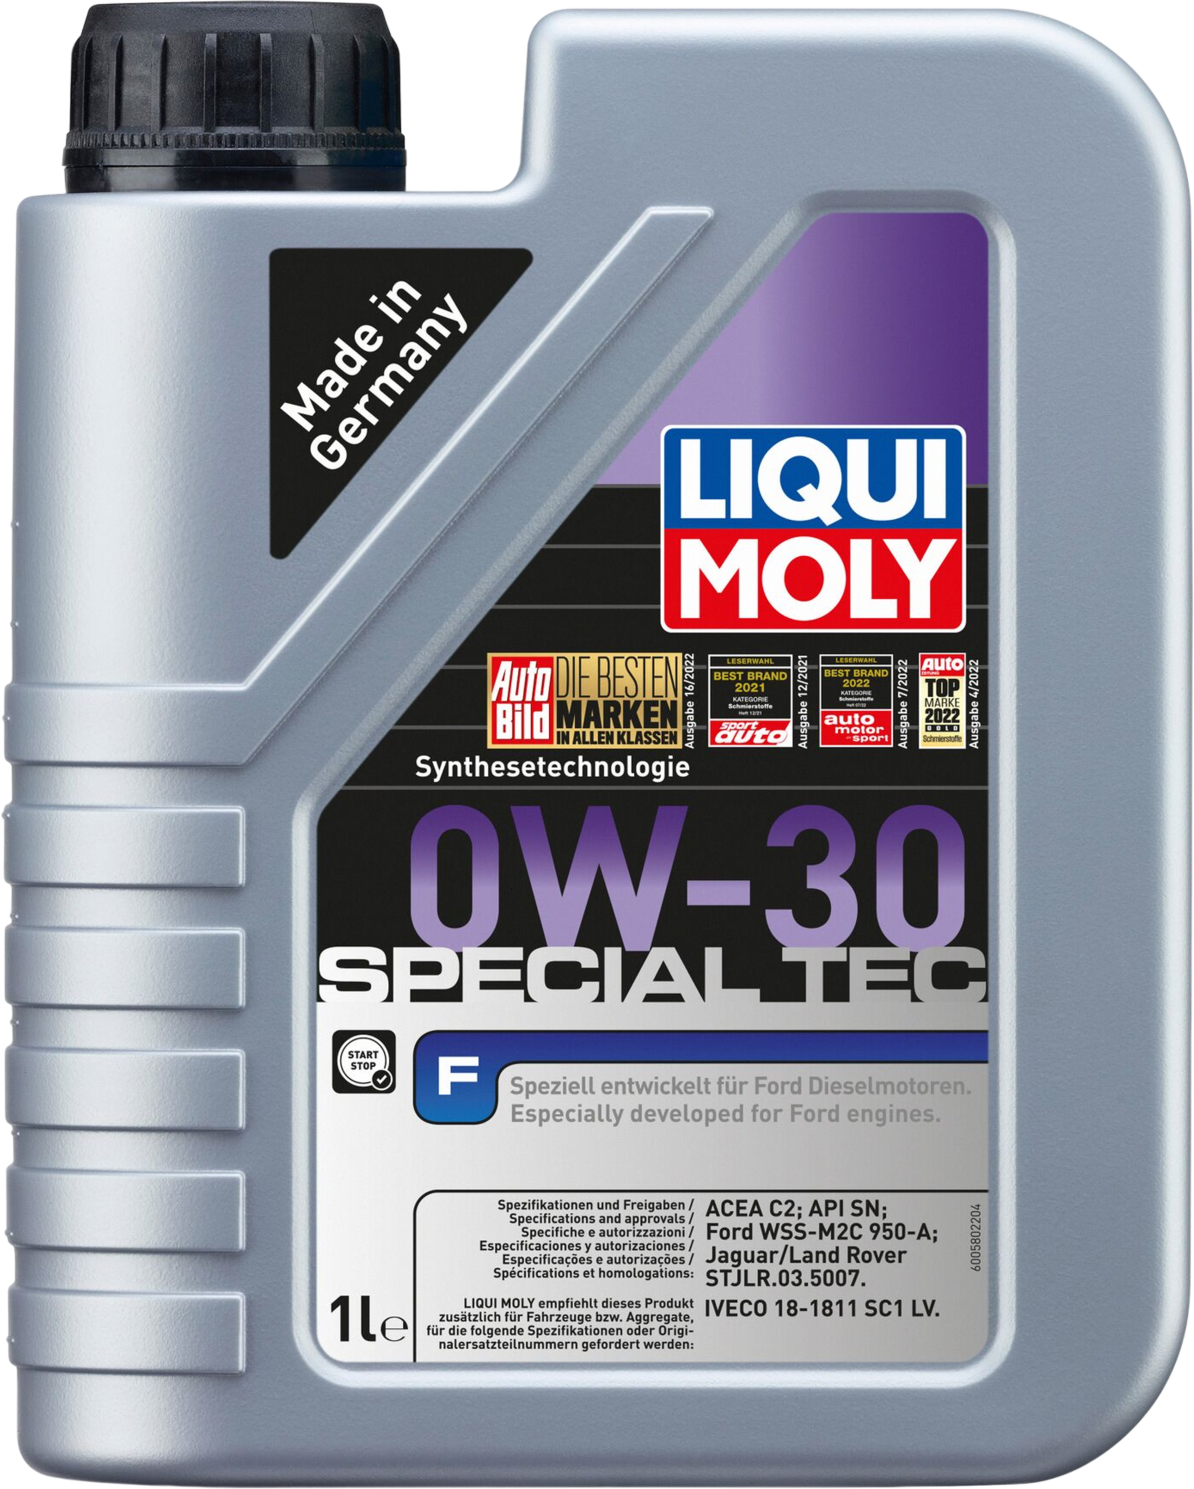 Liqui Moly Special Tec F 0W-30, 6 x 1 lt detail 2